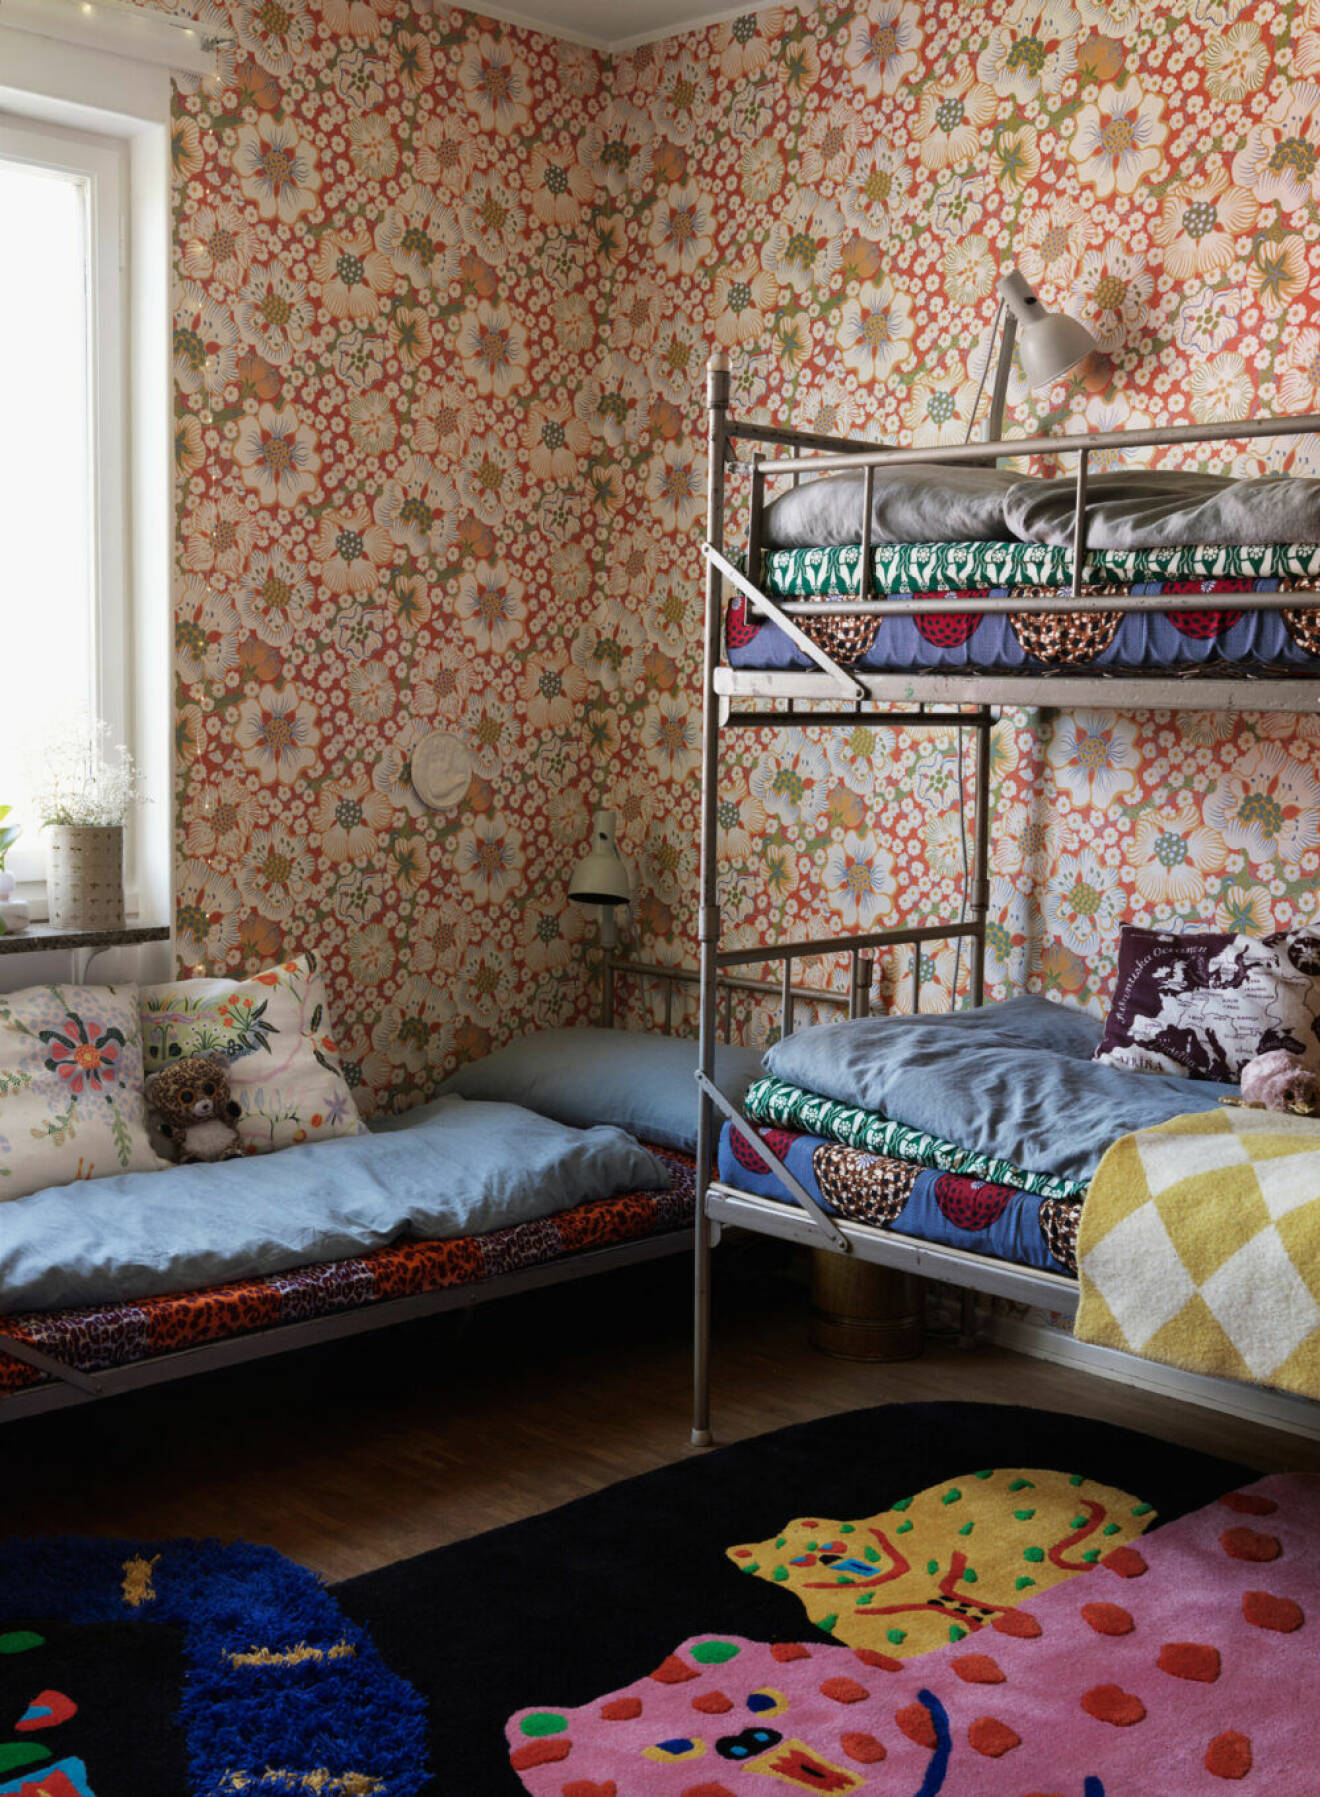 Färgglad lägenhet i Stockholm, sovrum med blommiga tapeter